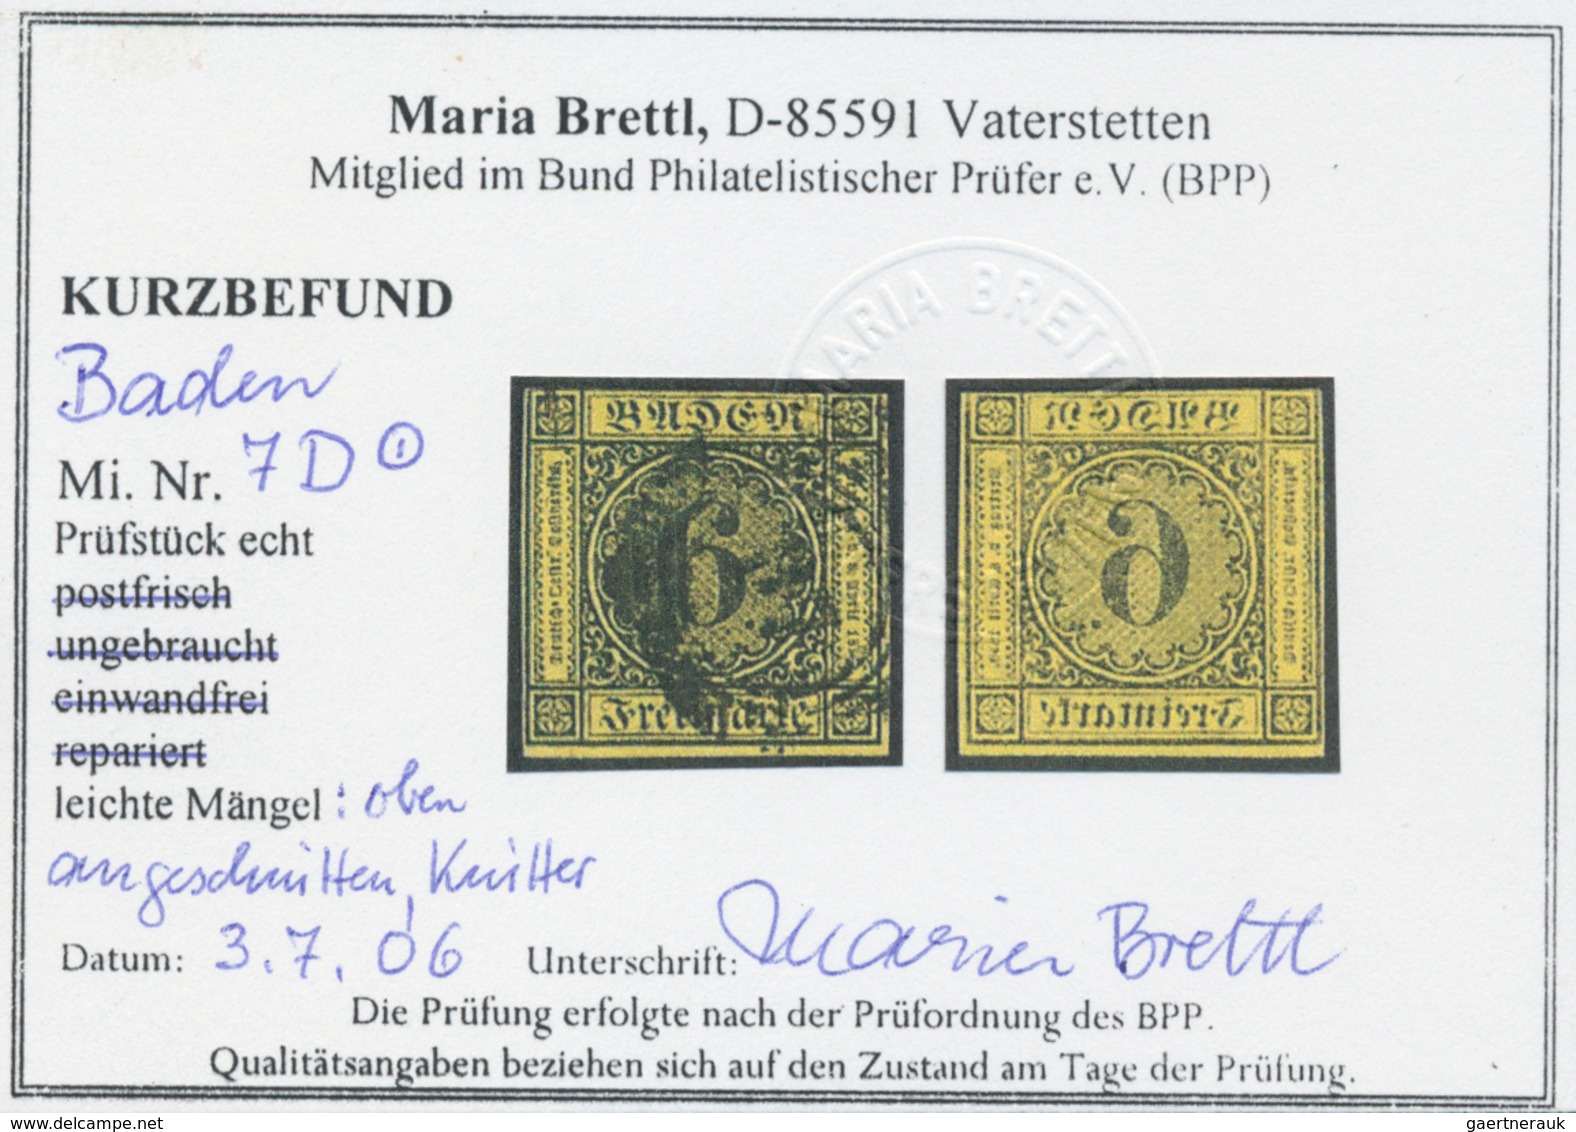 Baden - Marken und Briefe: 1851/67, Umfangreicher Posten von fast fünfzig großen Steckkarten (meist